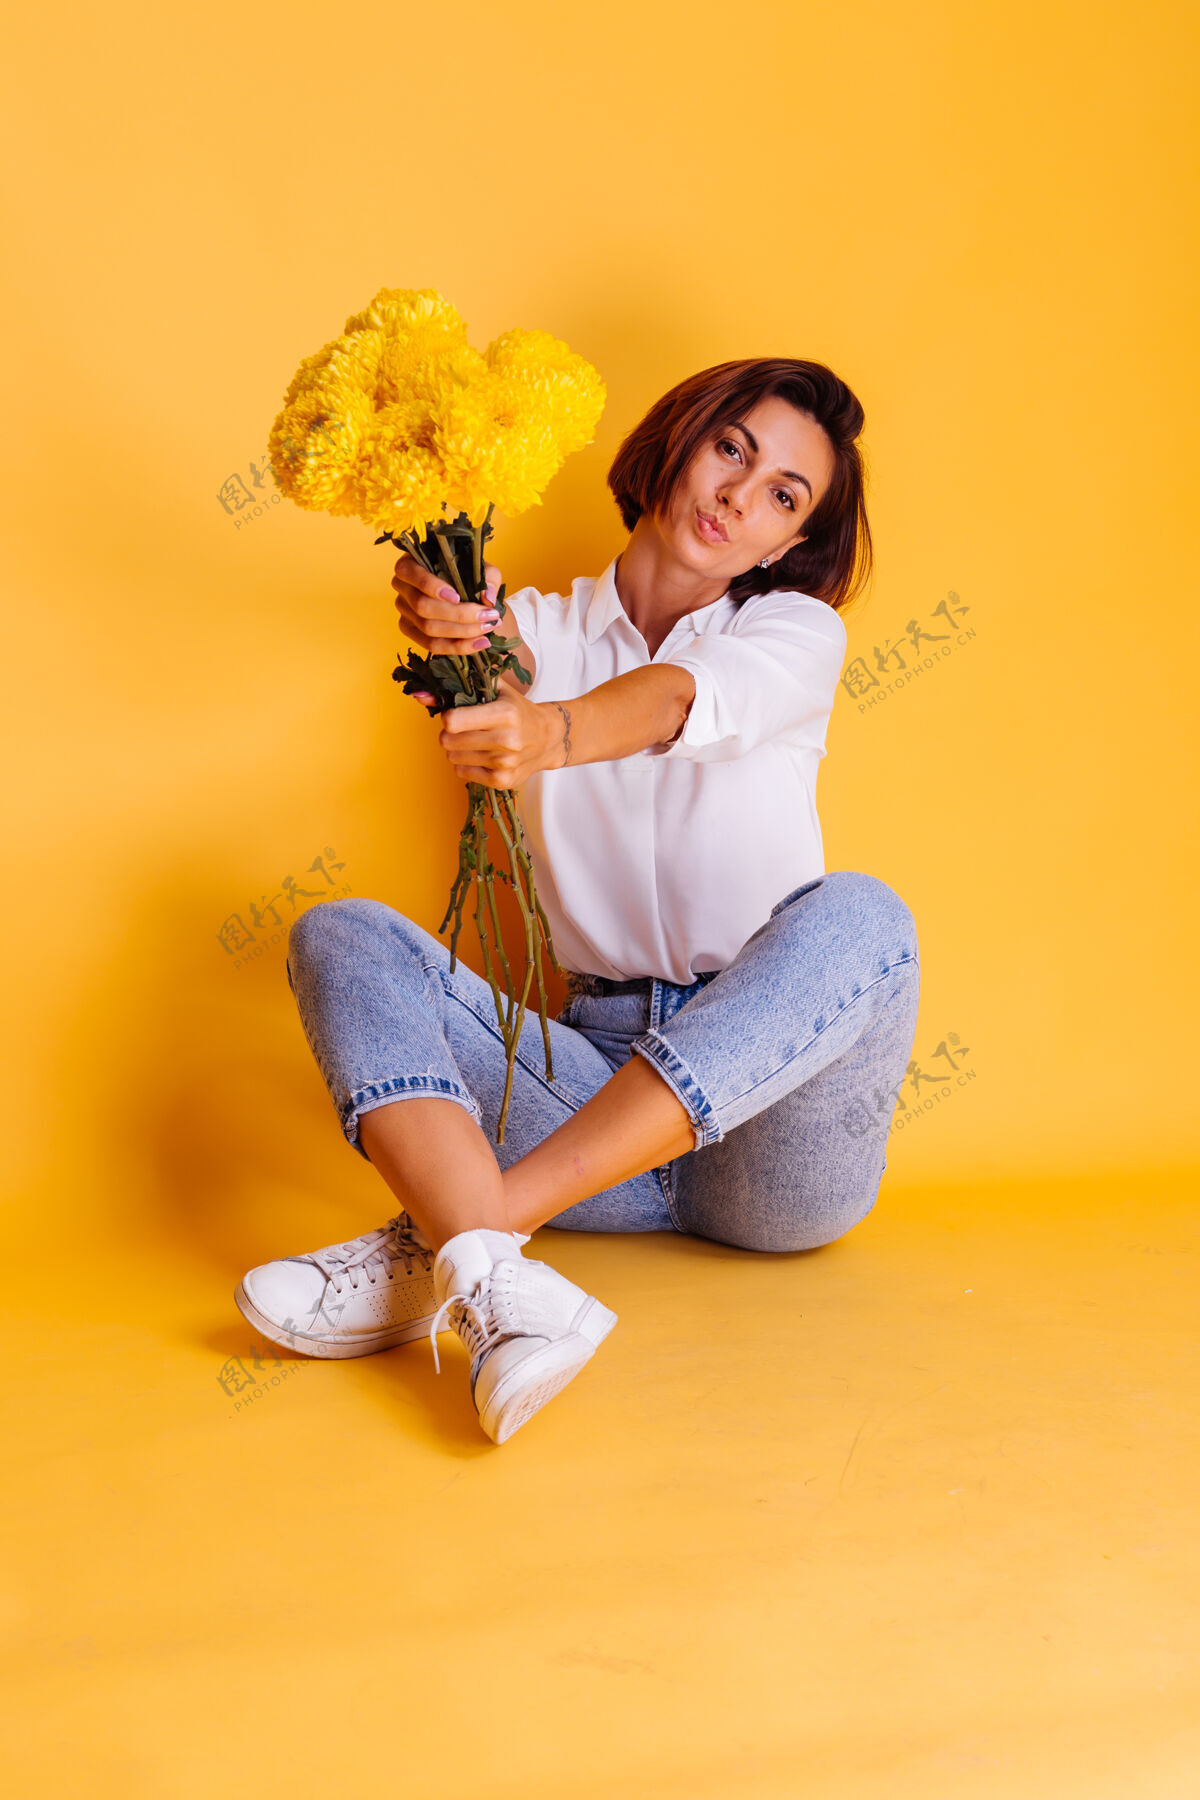 积极摄影棚拍摄的黄色背景快乐的白人妇女短发穿着休闲服白衬衫和牛仔裤手持一束黄色紫苑期待惊喜植物